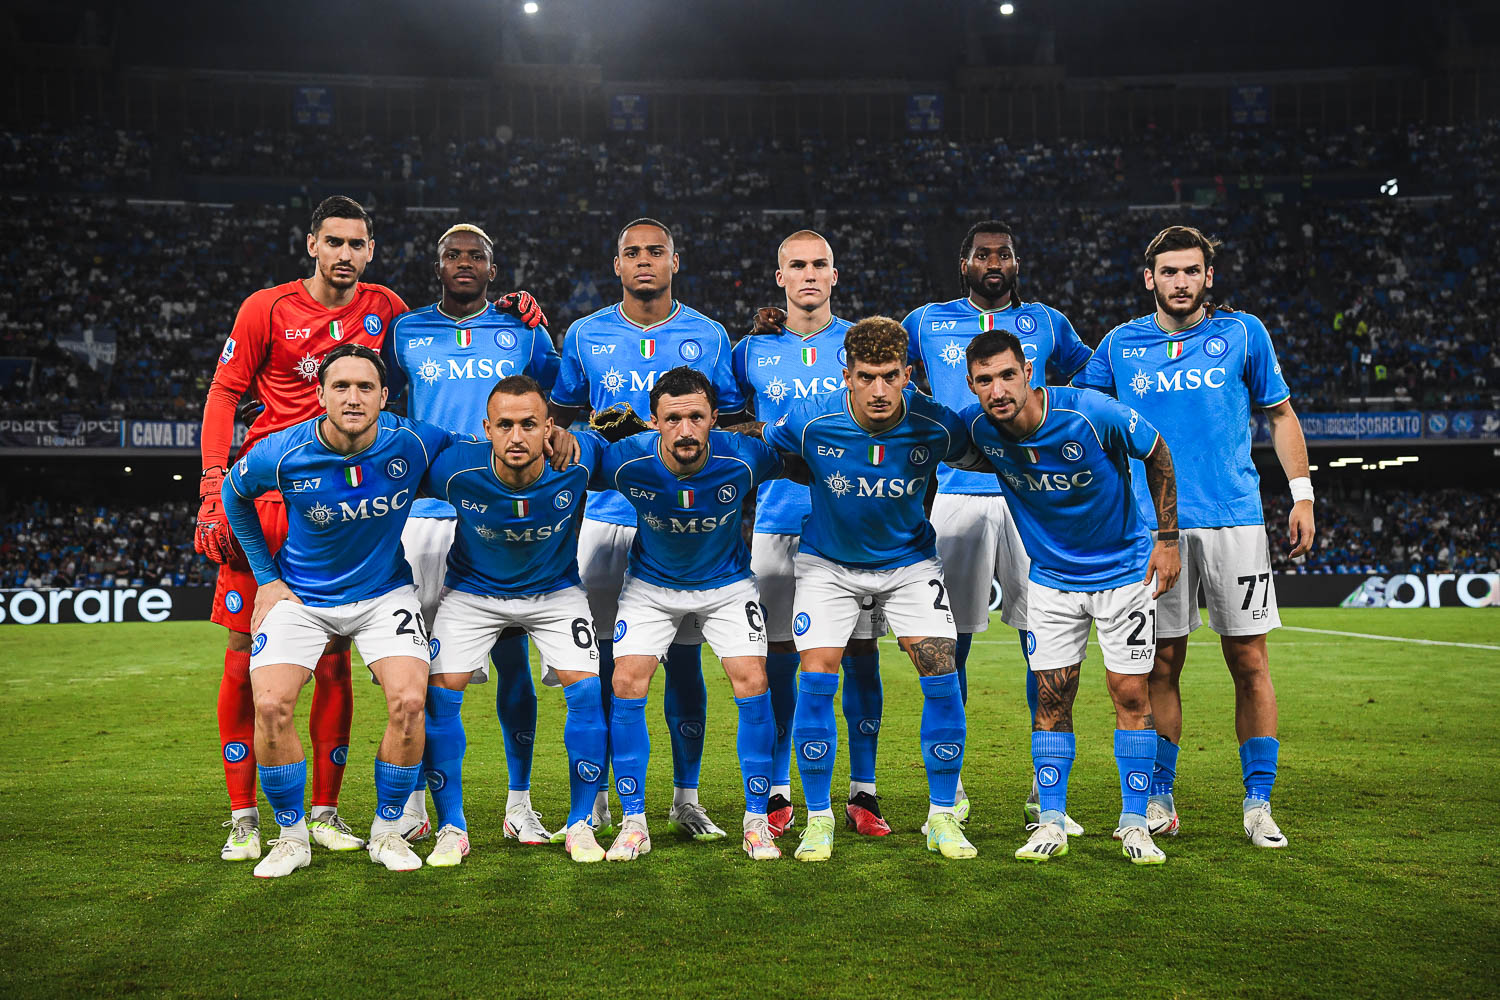 Calcio Napoli finalmente autoritario:4 1 all’Udinese